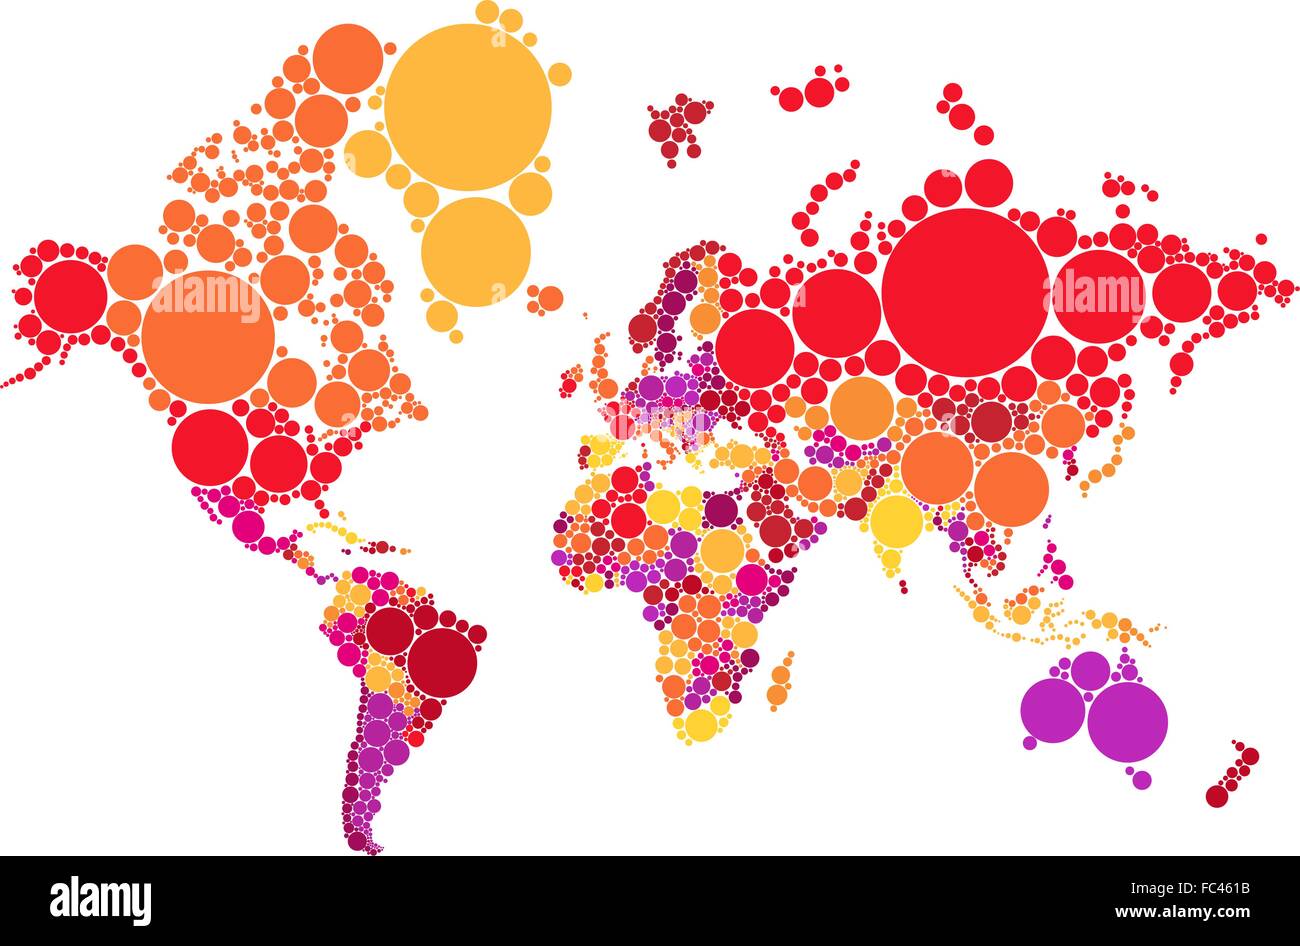 Abstract politico dot mappa del mondo con i paesi, illustrazione vettoriale mappa fonte NASA Dominio pubblico Illustrazione Vettoriale